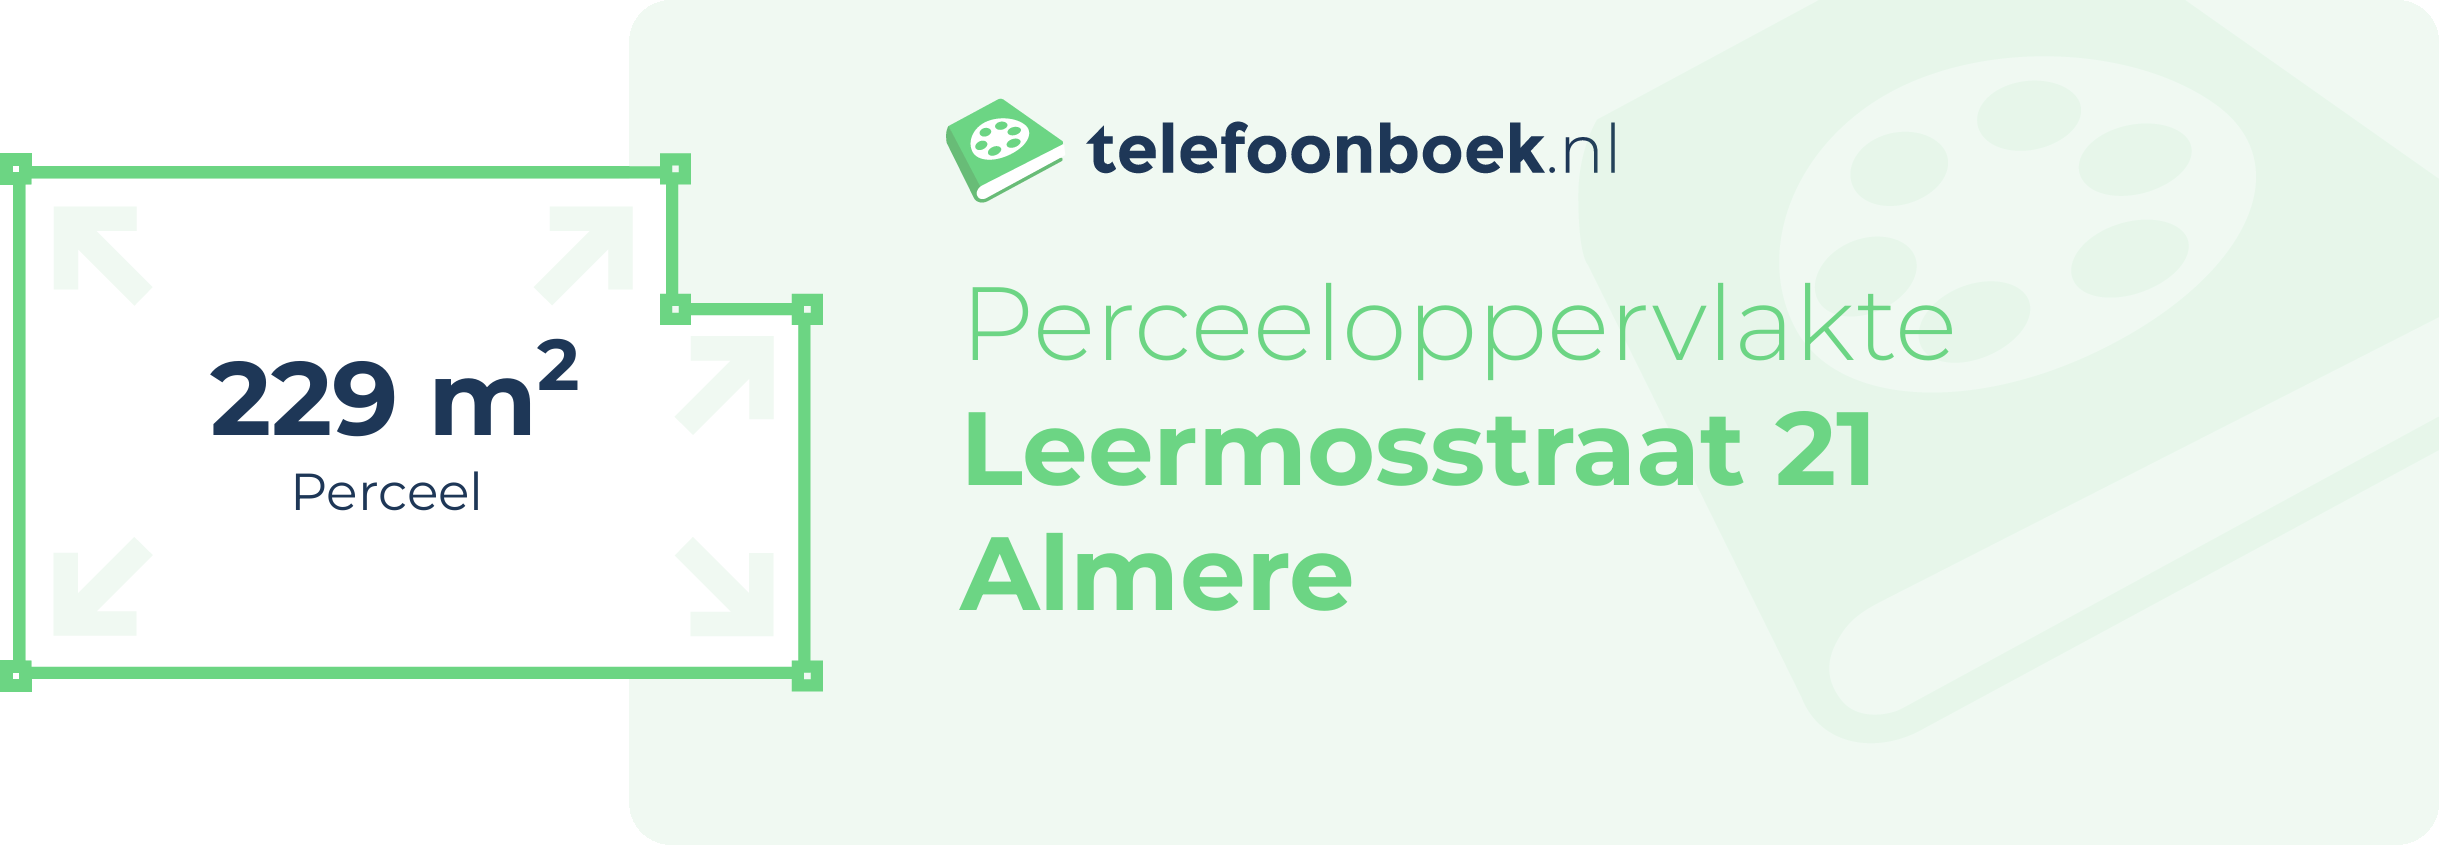 Perceeloppervlakte Leermosstraat 21 Almere